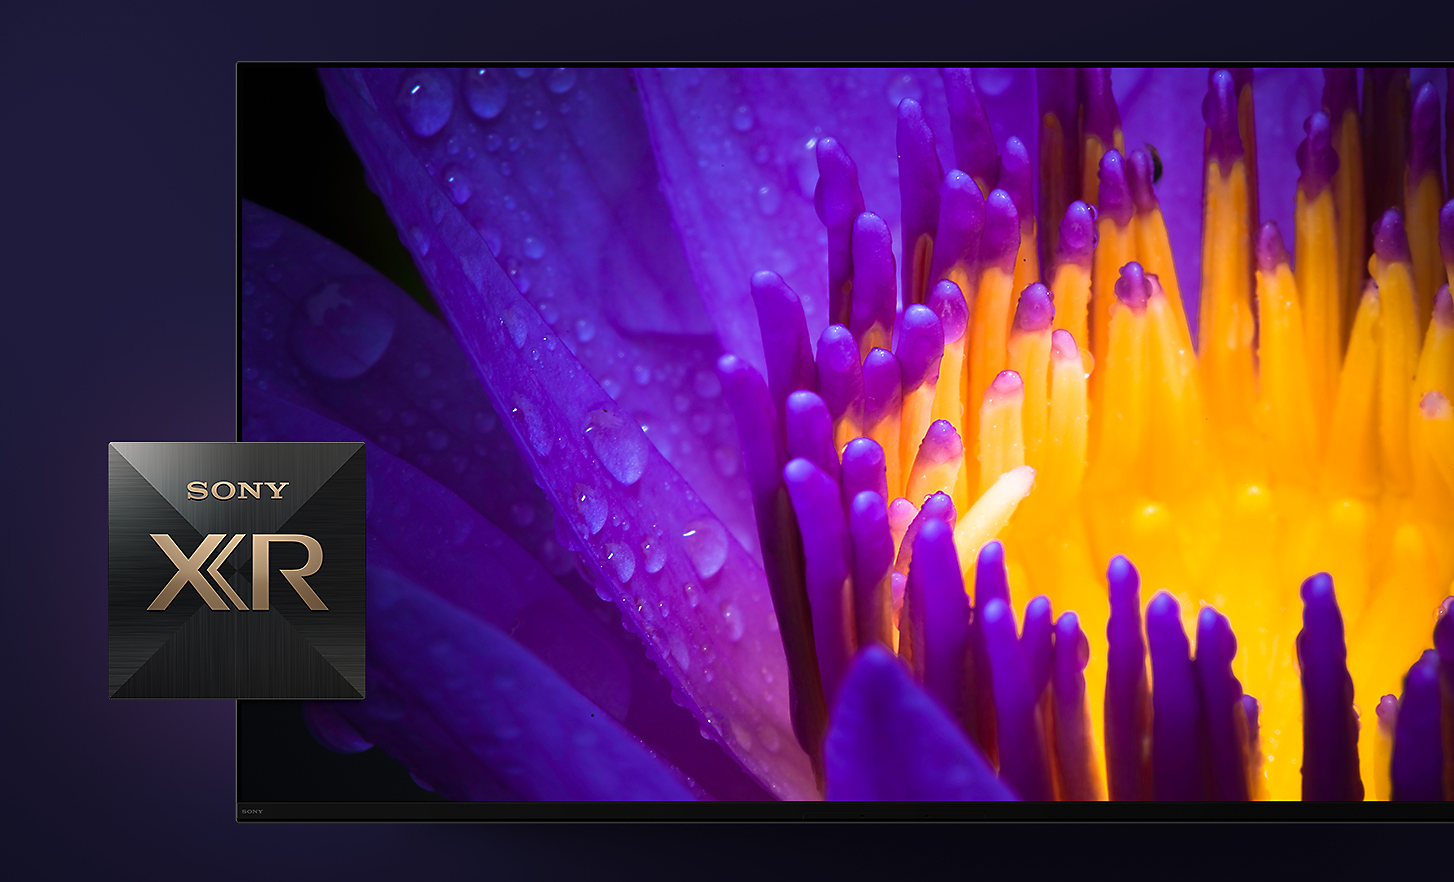 Tv-képernyő részlete; a képernyőn sárga és lila virágszirmok, az előtérben pedig a Sony XR logója látszik